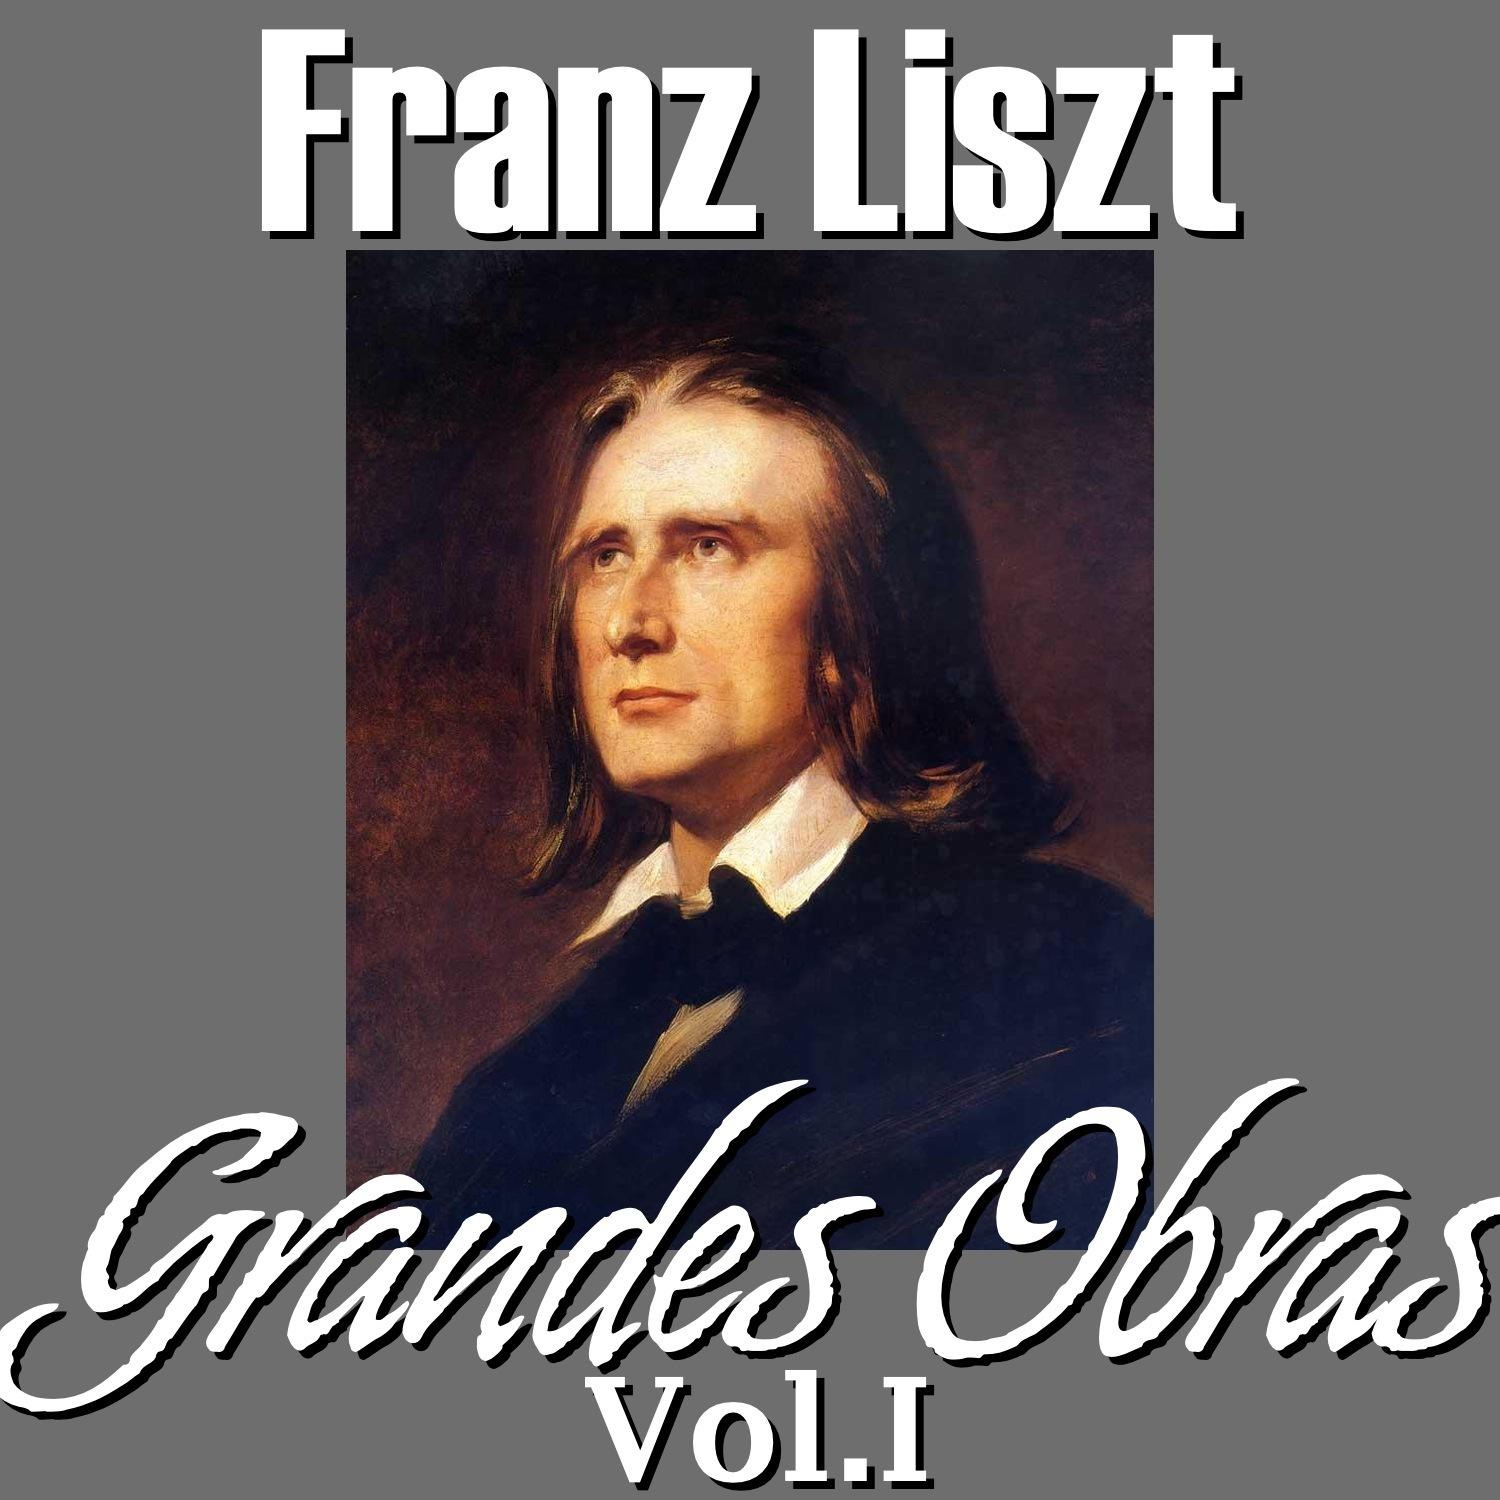 Franz Liszt Grandes Obras Vol.I